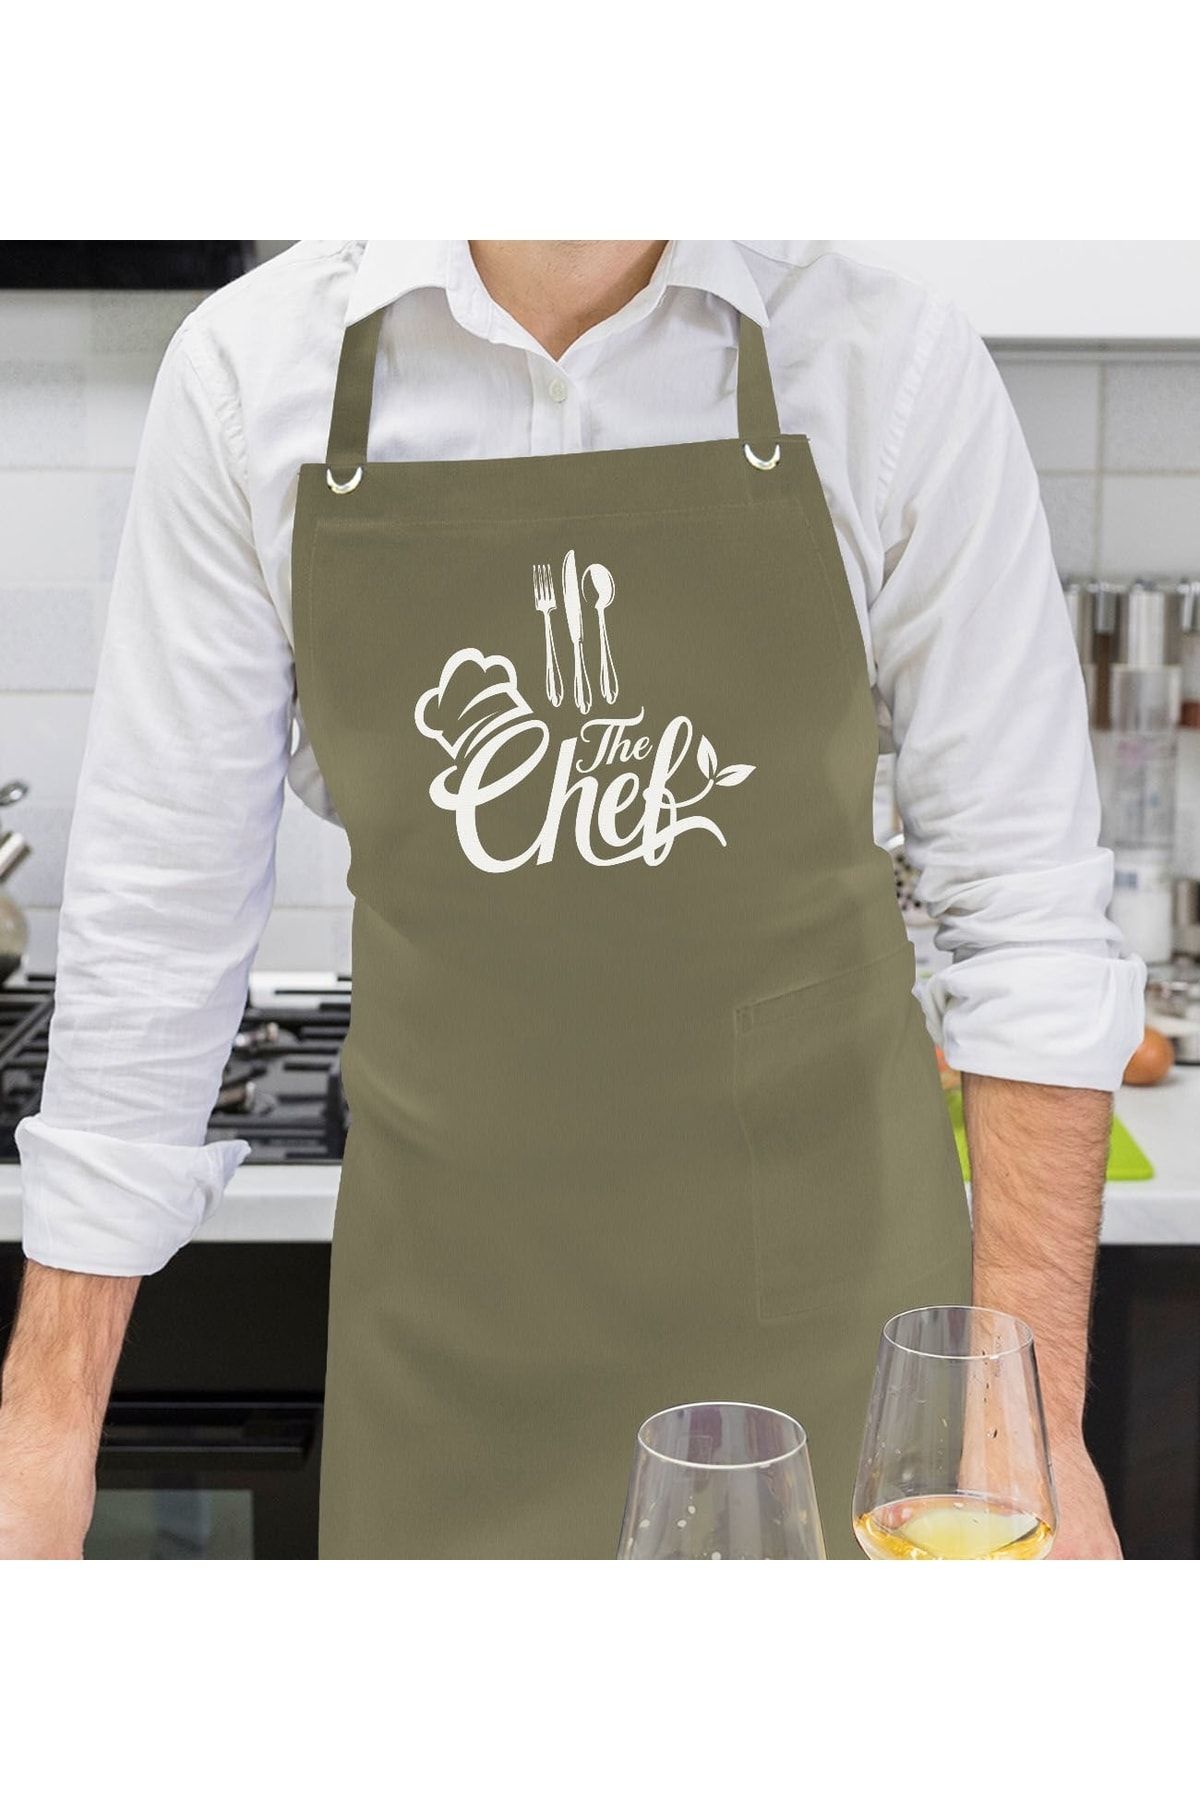 Bk Gift Profesyonel Chef Tasarımlı Haki Yeşil Mutfak Önlüğü, Aşçı Önlüğü, Şef Önlüğü, Ev Hediyesi, A